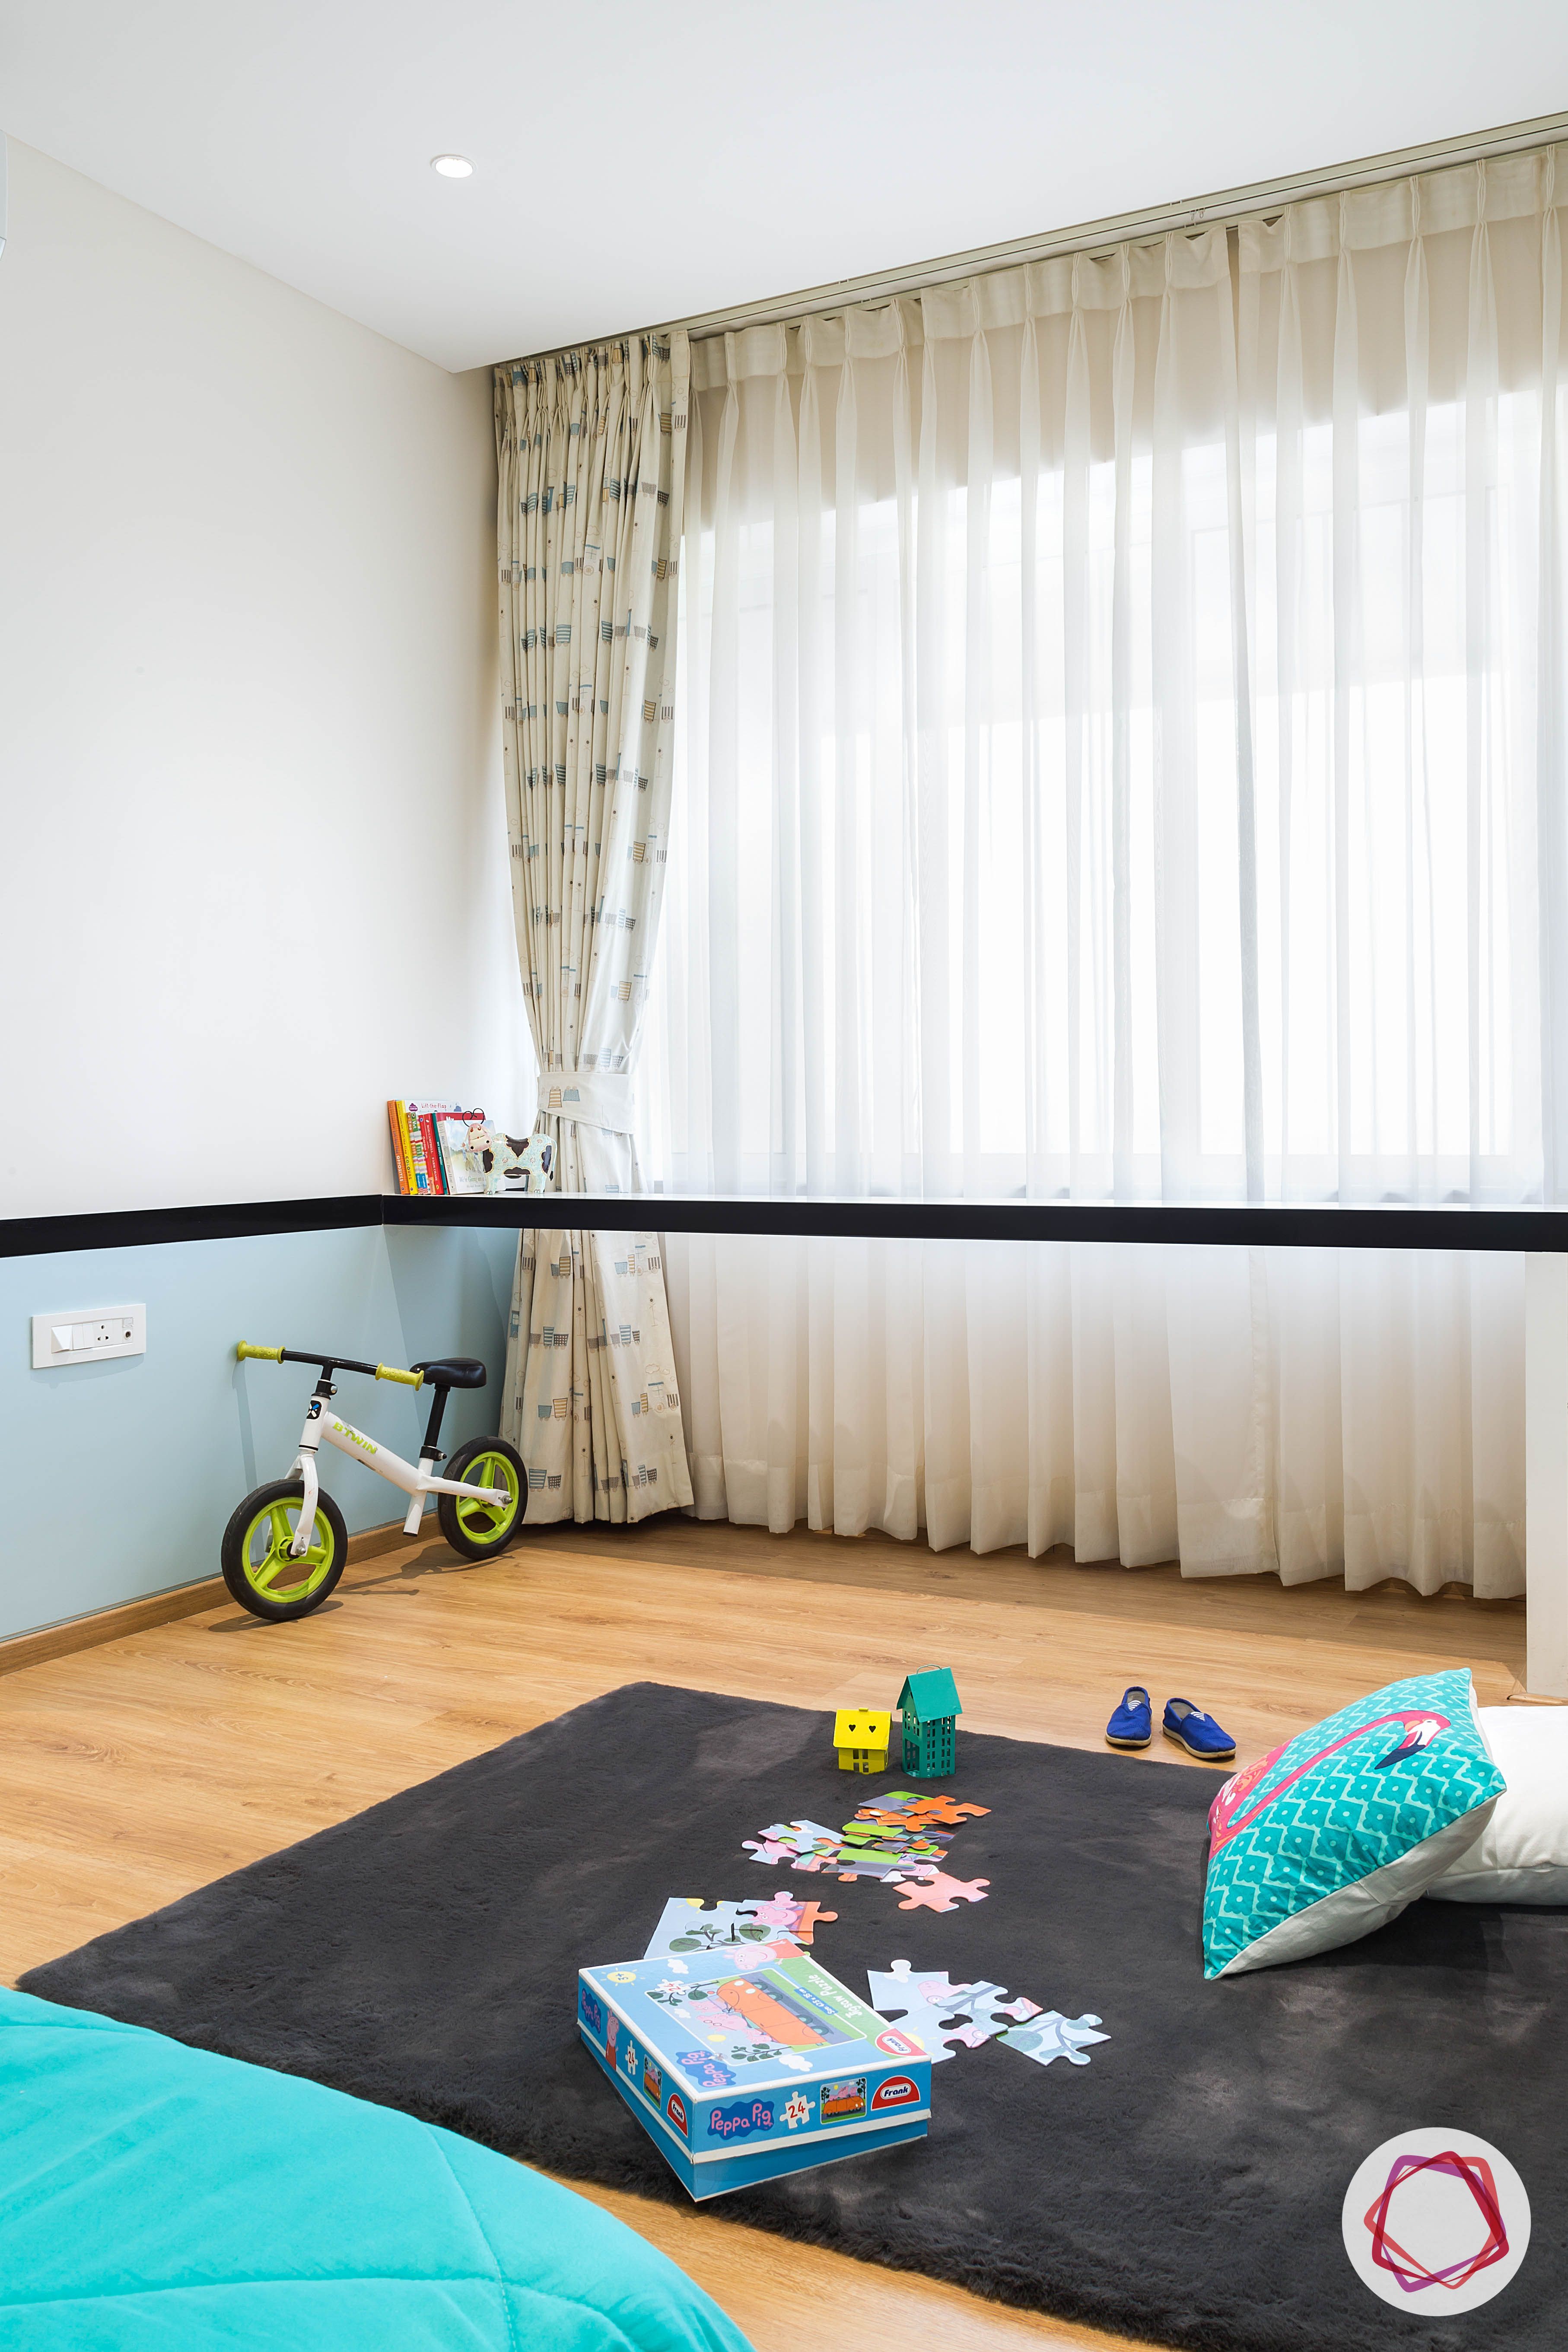 4bhk house plan-kids bedroom-wooden-cycle-rug